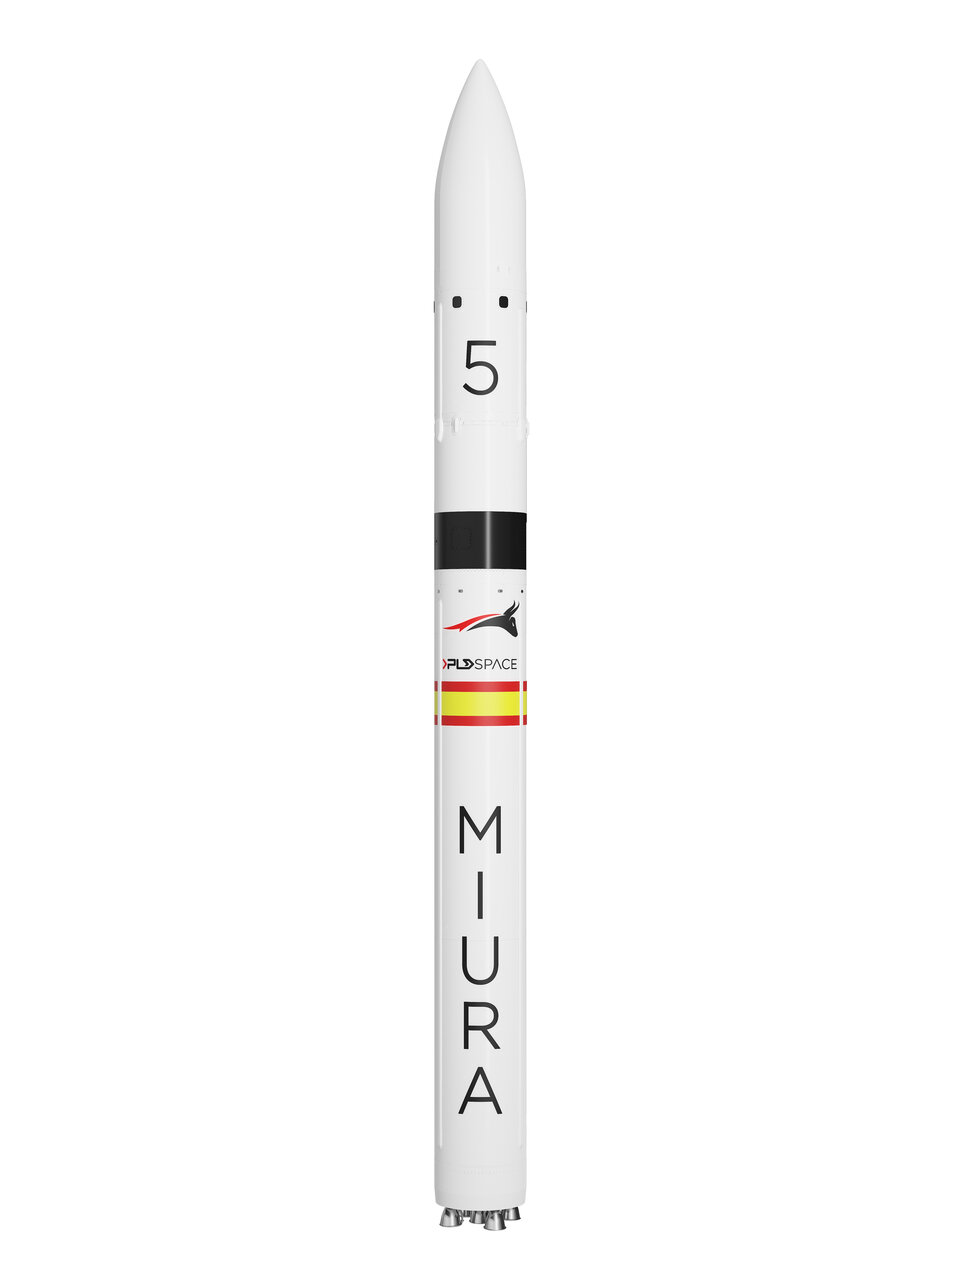 Miura 5, un lanceur dédié pour les petits satellites